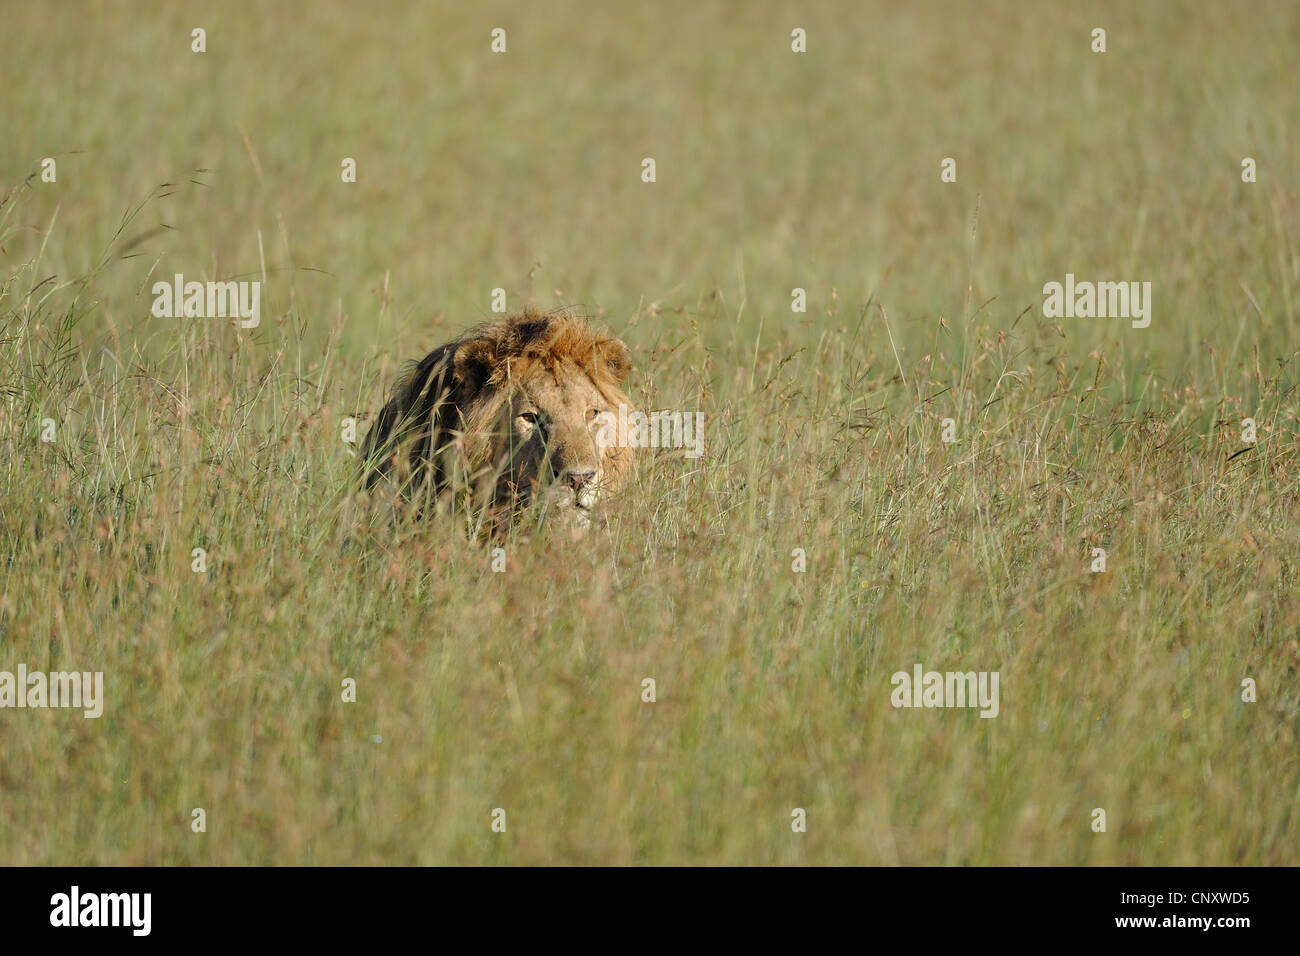 East African Lion - Massai Löwe (Panthera Leo Nubica) männlichen versteckt in den Rasen Masai Mara - Kenia - Ost-Afrika Stockfoto